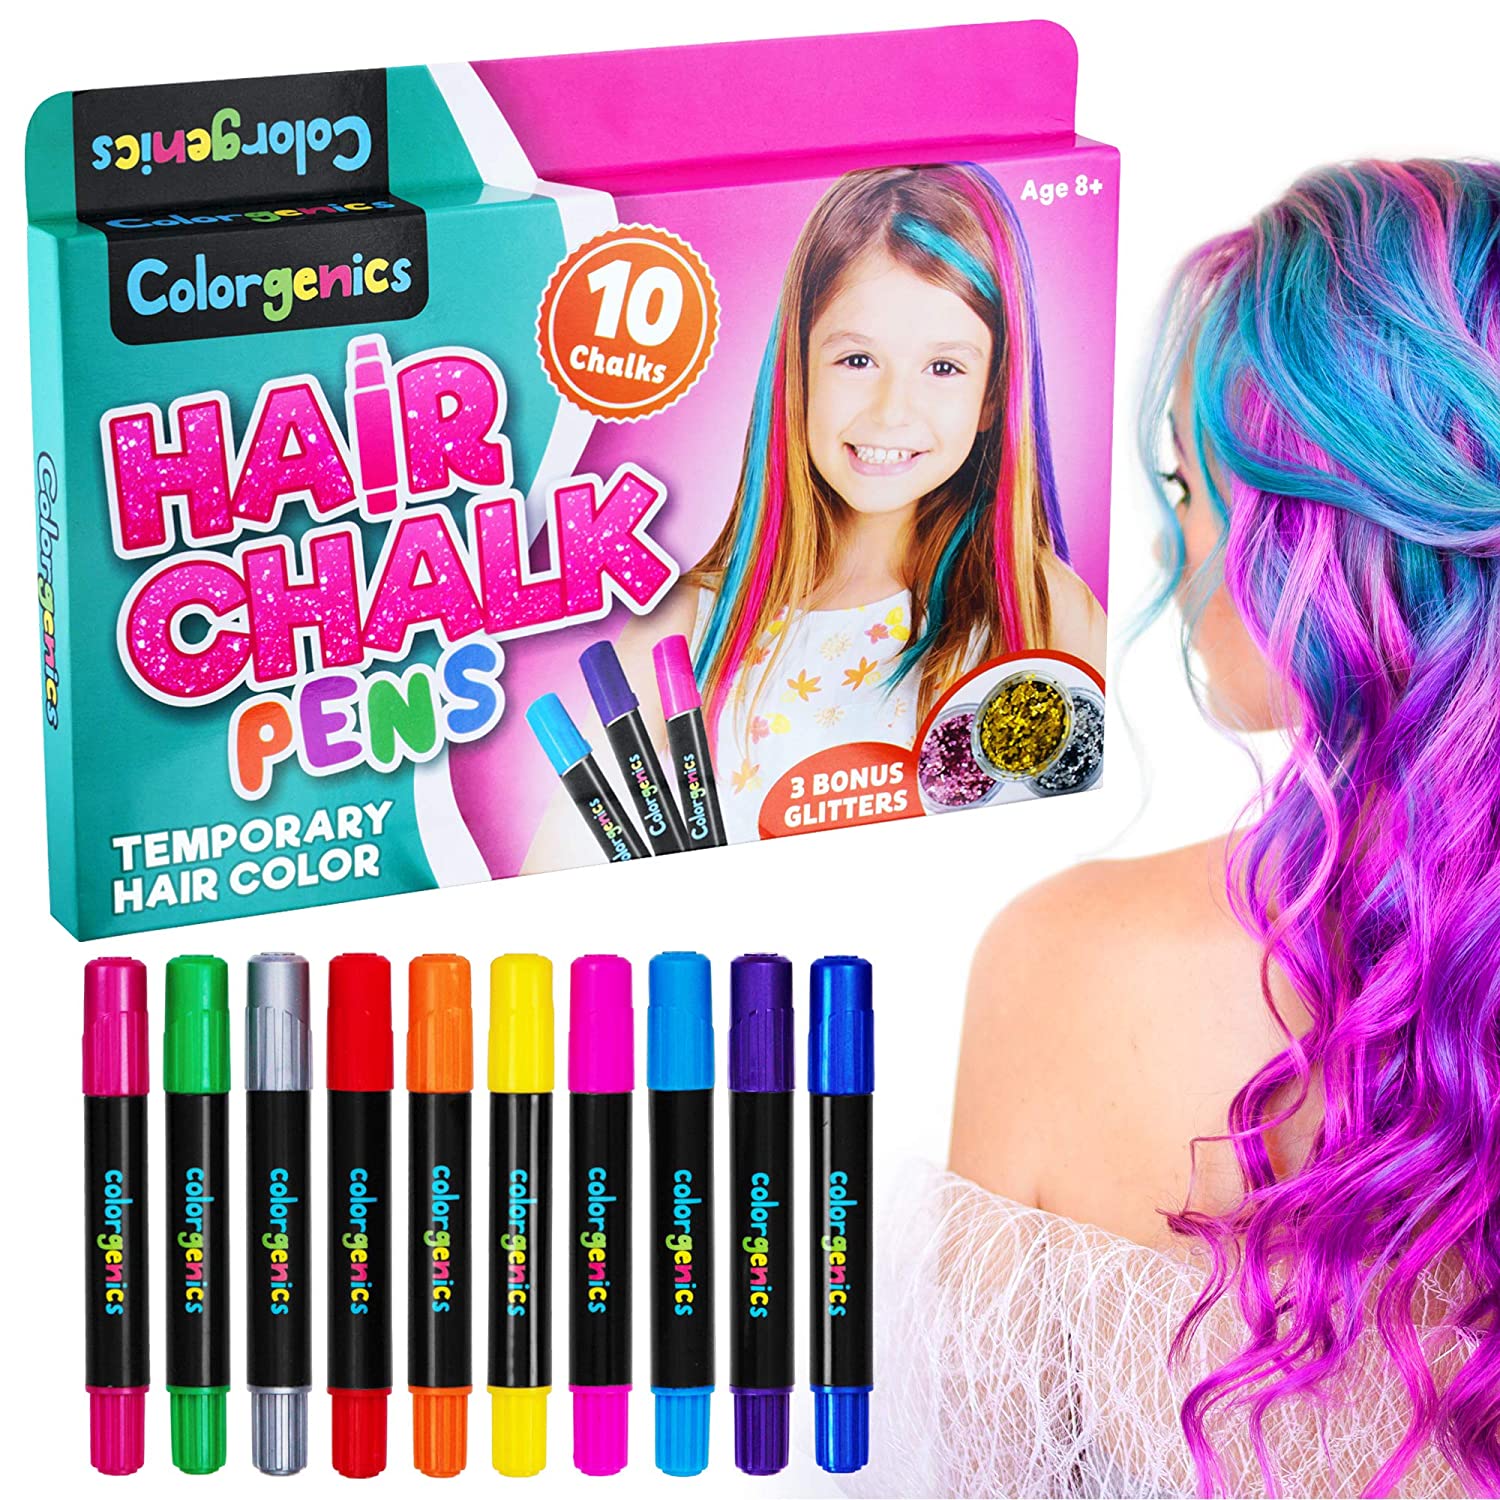 Colorgenics Haar Krijt Meisjes Tijdelijke Haar Krijt Voor Kinderen 10 Kleur Krijt Pennen & Glitters Niet Giftig Wasbare Tijdelijke haar